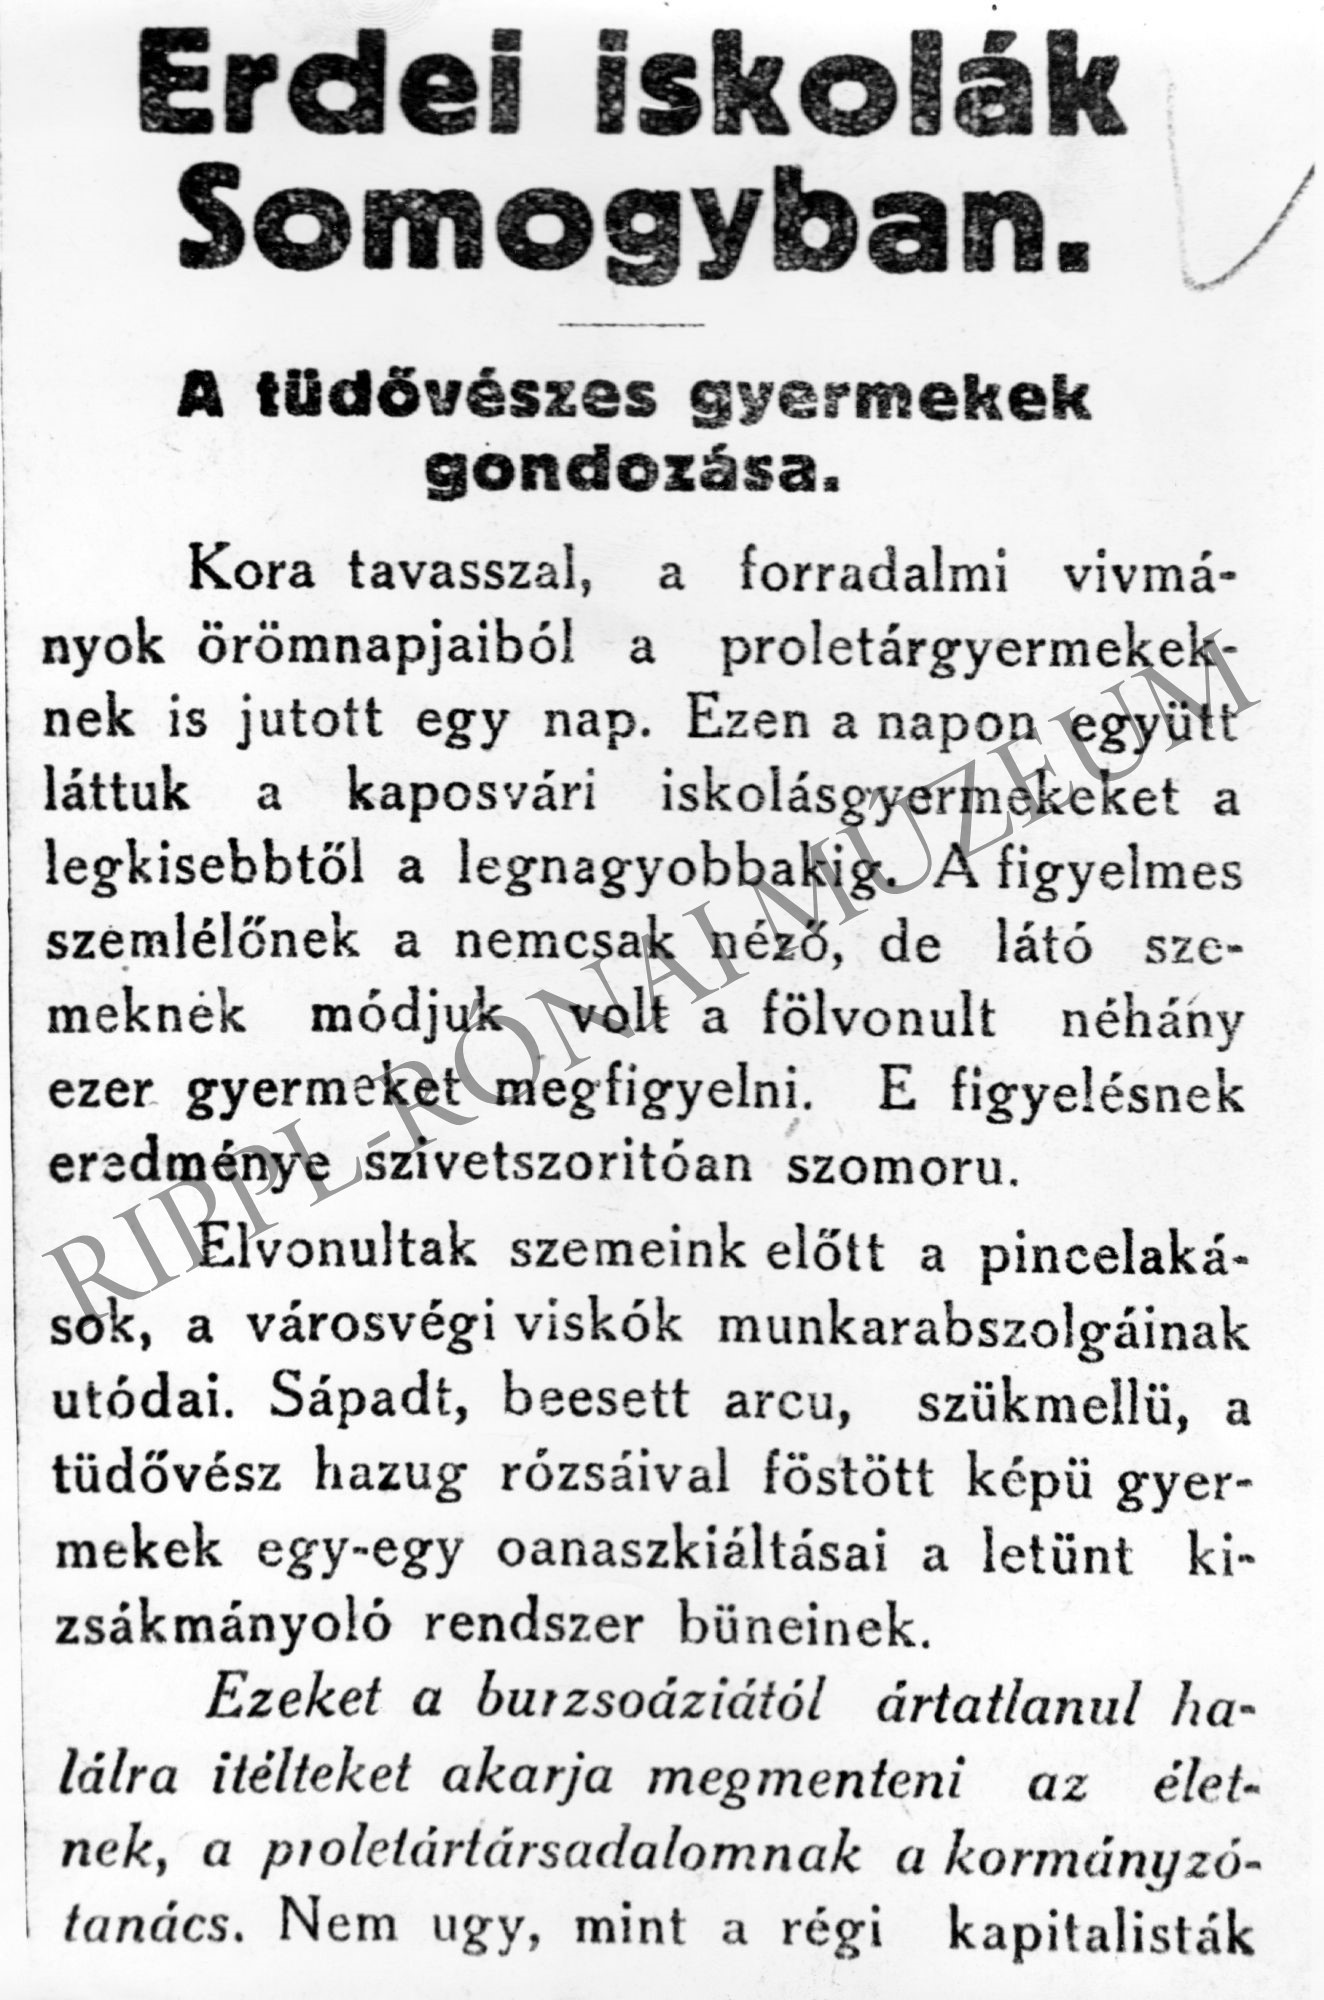 Erdei iskolák Somogyban - a Somogyi Vörös Újság cikke (Rippl-Rónai Múzeum CC BY-NC-SA)